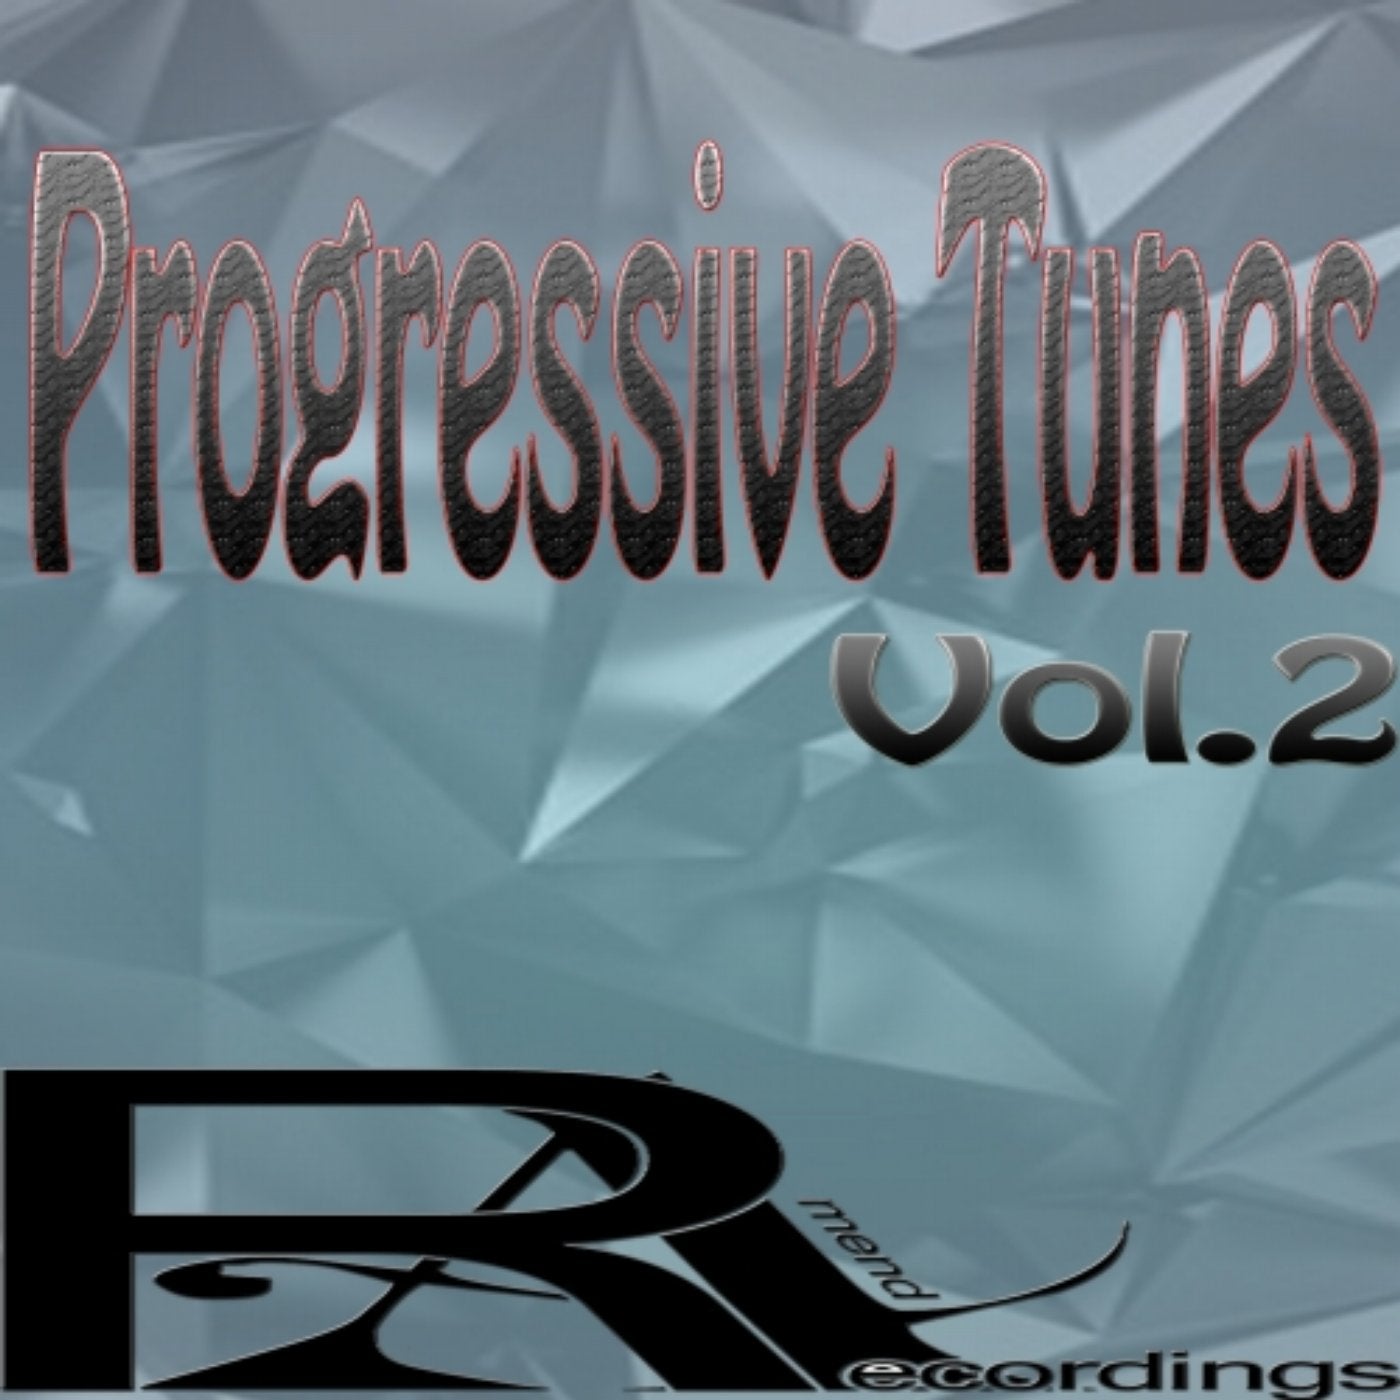 Progressive Tunes (Vol.2)